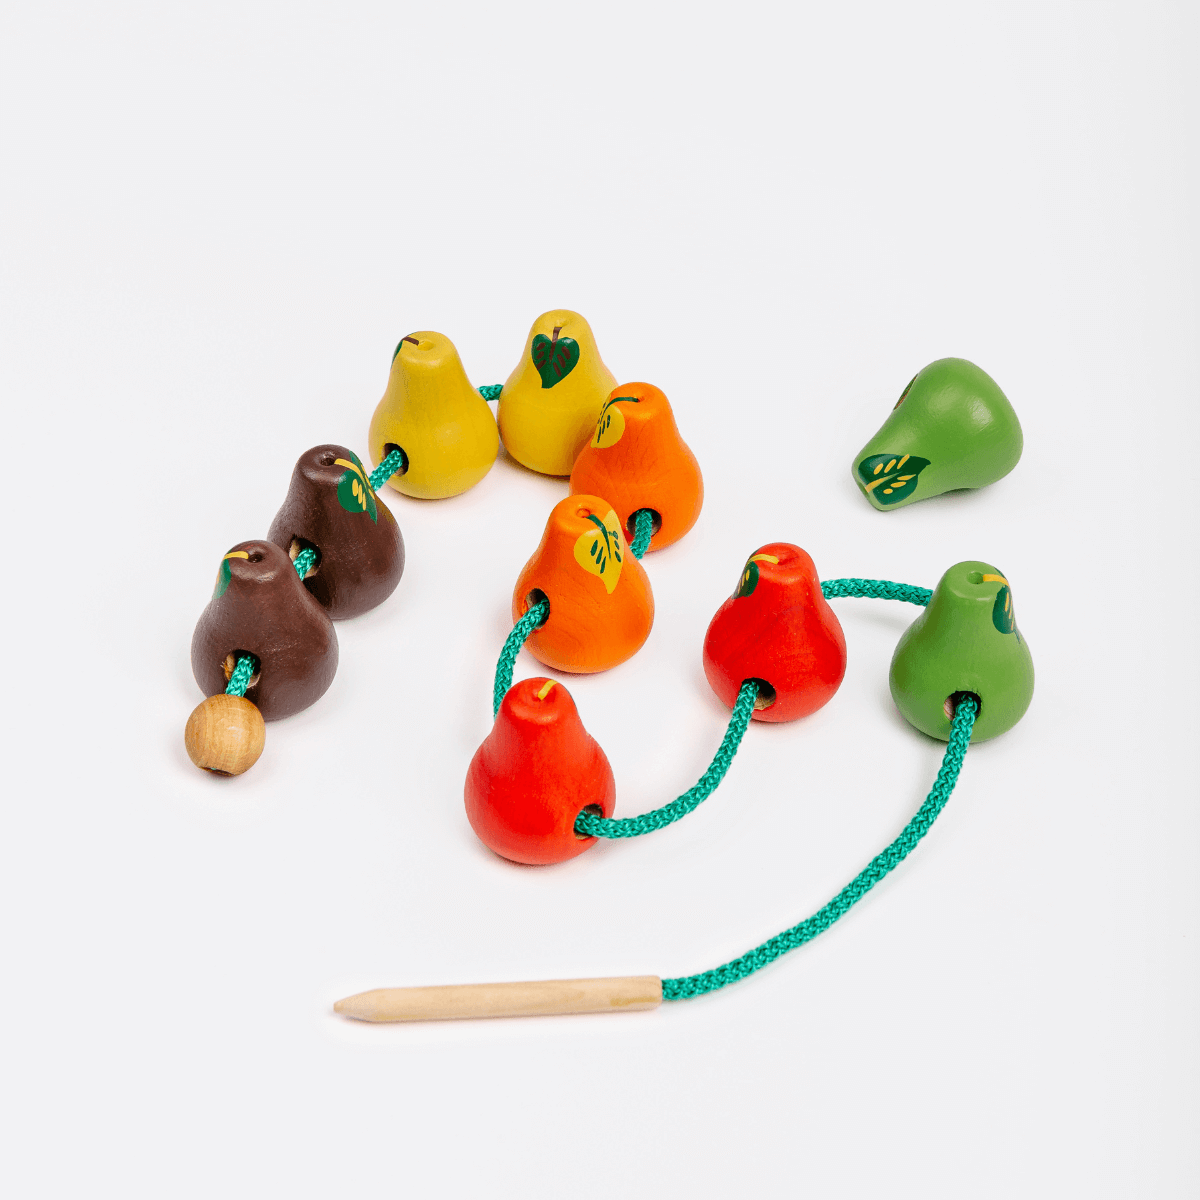 фото Игра шнуровка mag wood груши развивающая игрушка в подарок для детей